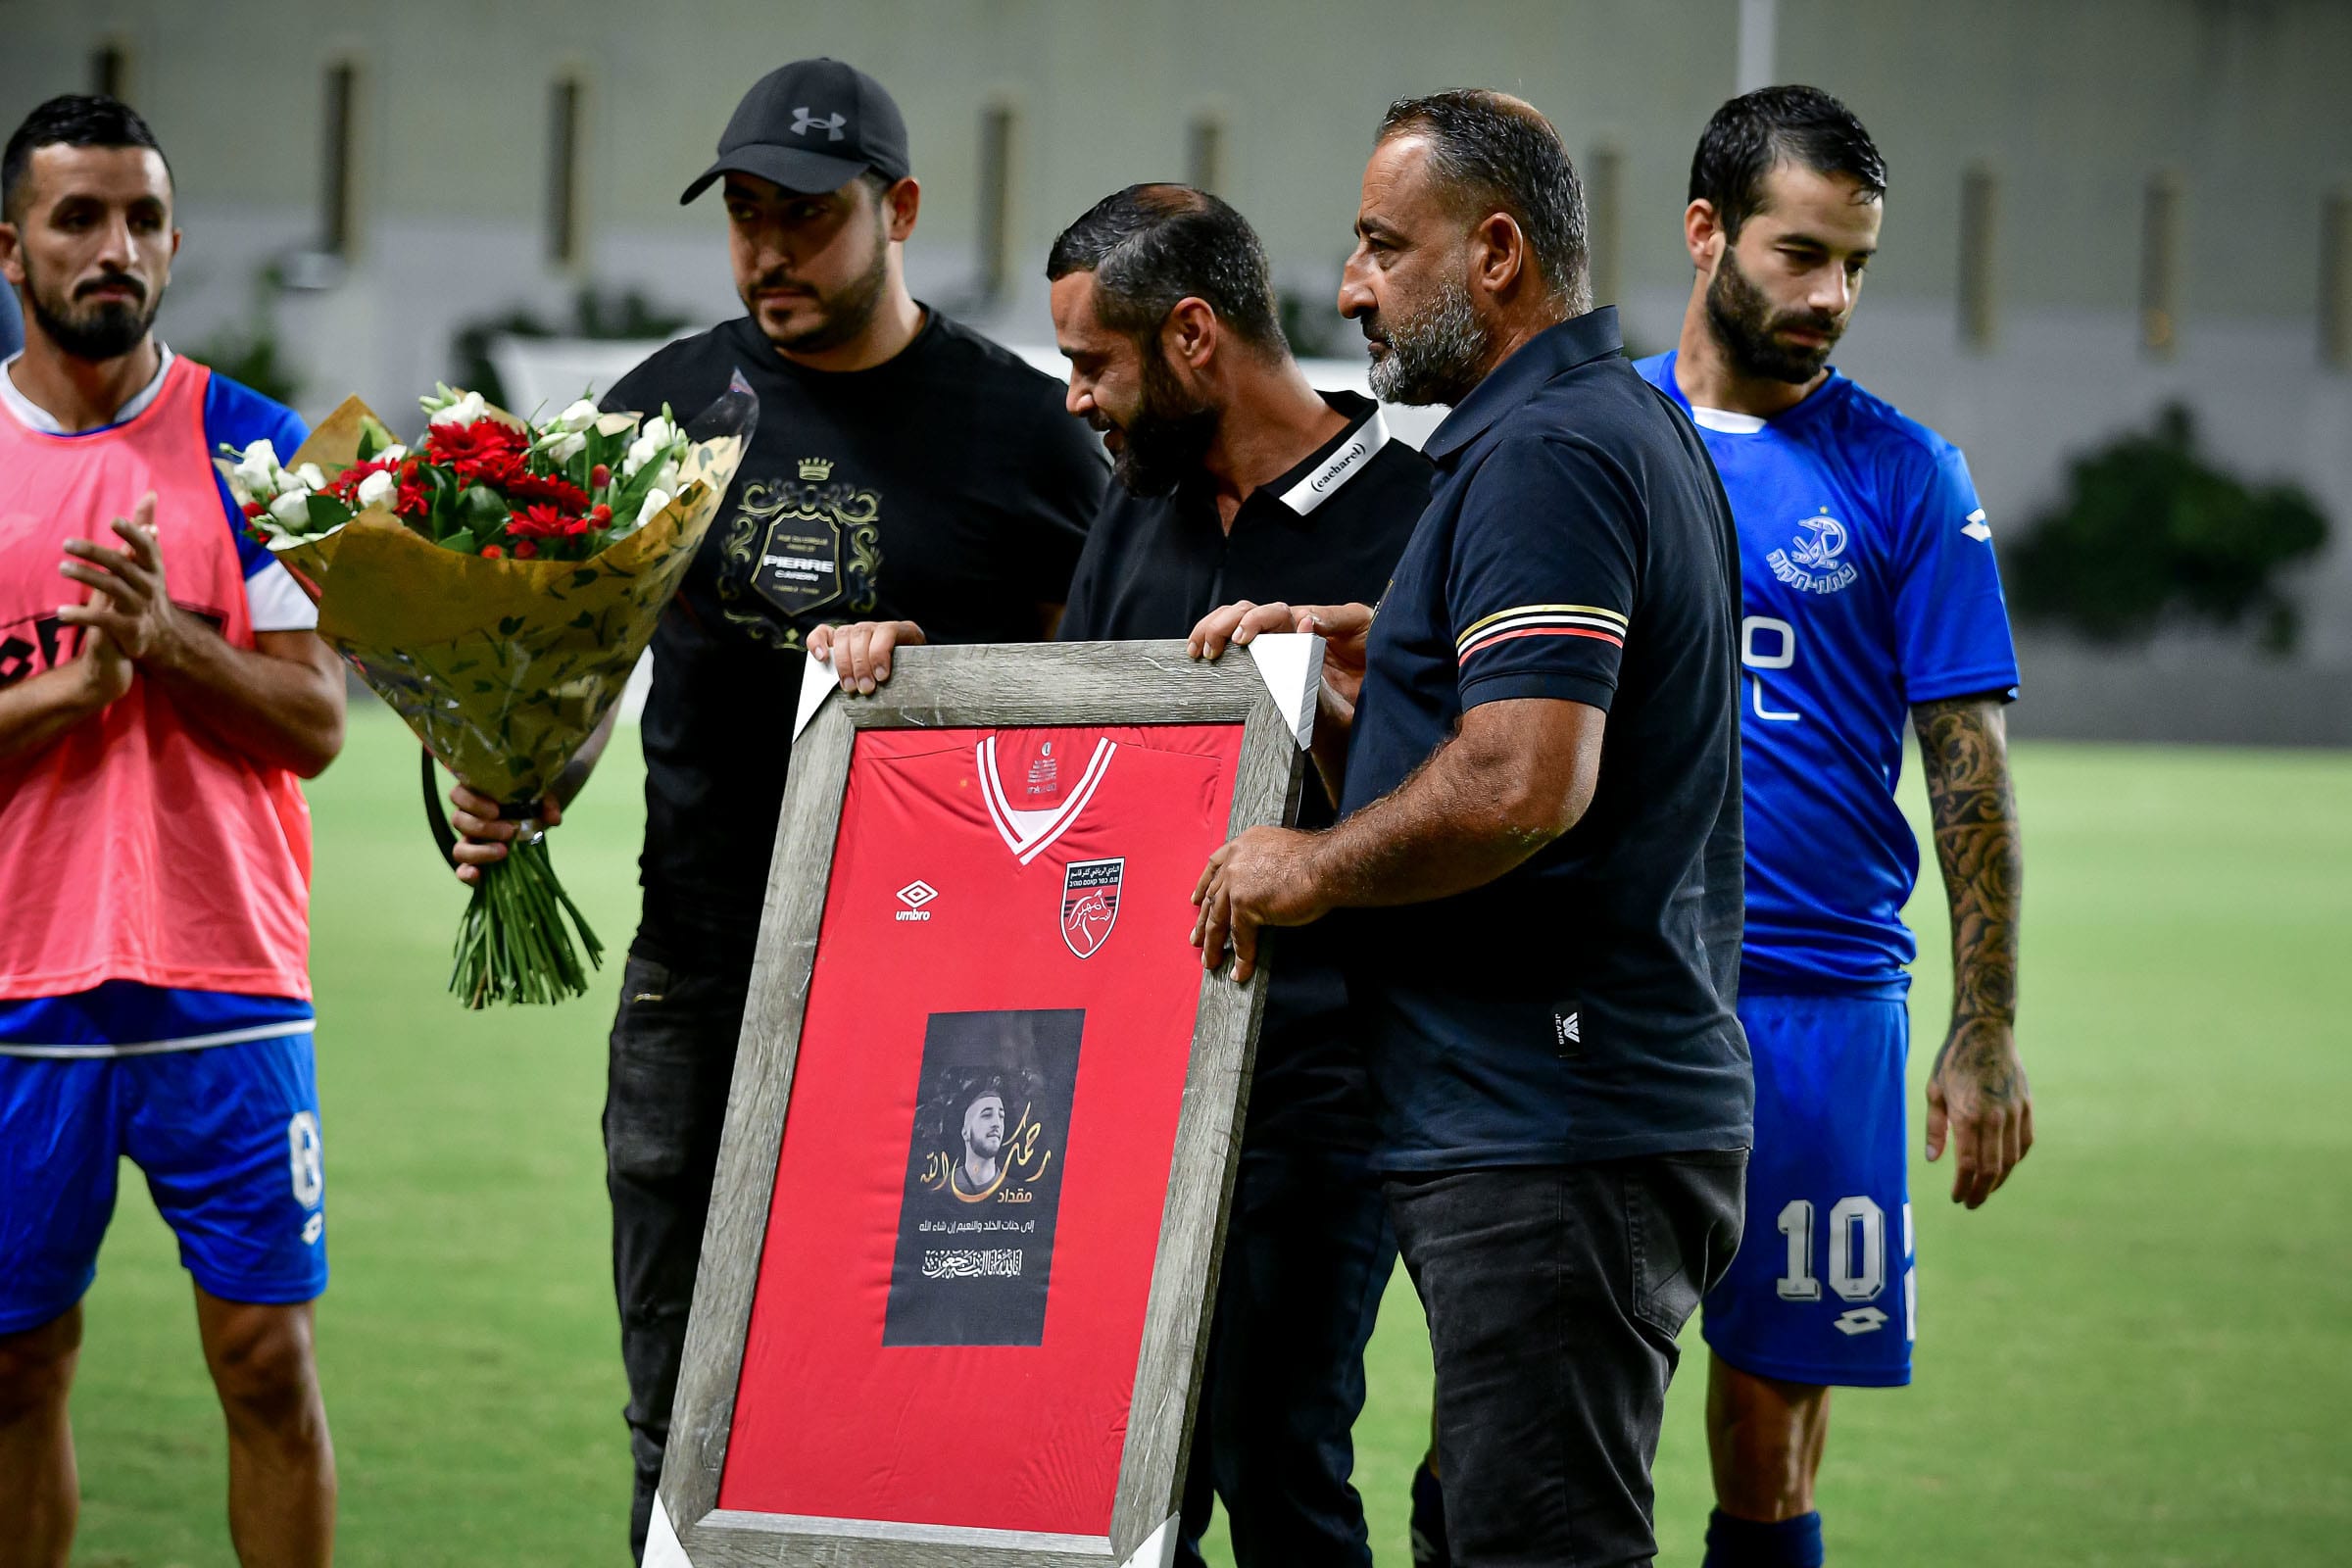 טקס לזכרו של מקדאד בדוי, כדורגלן מ.ס. כפר קאסם לשעבר שנהרג בתאונת דרכים